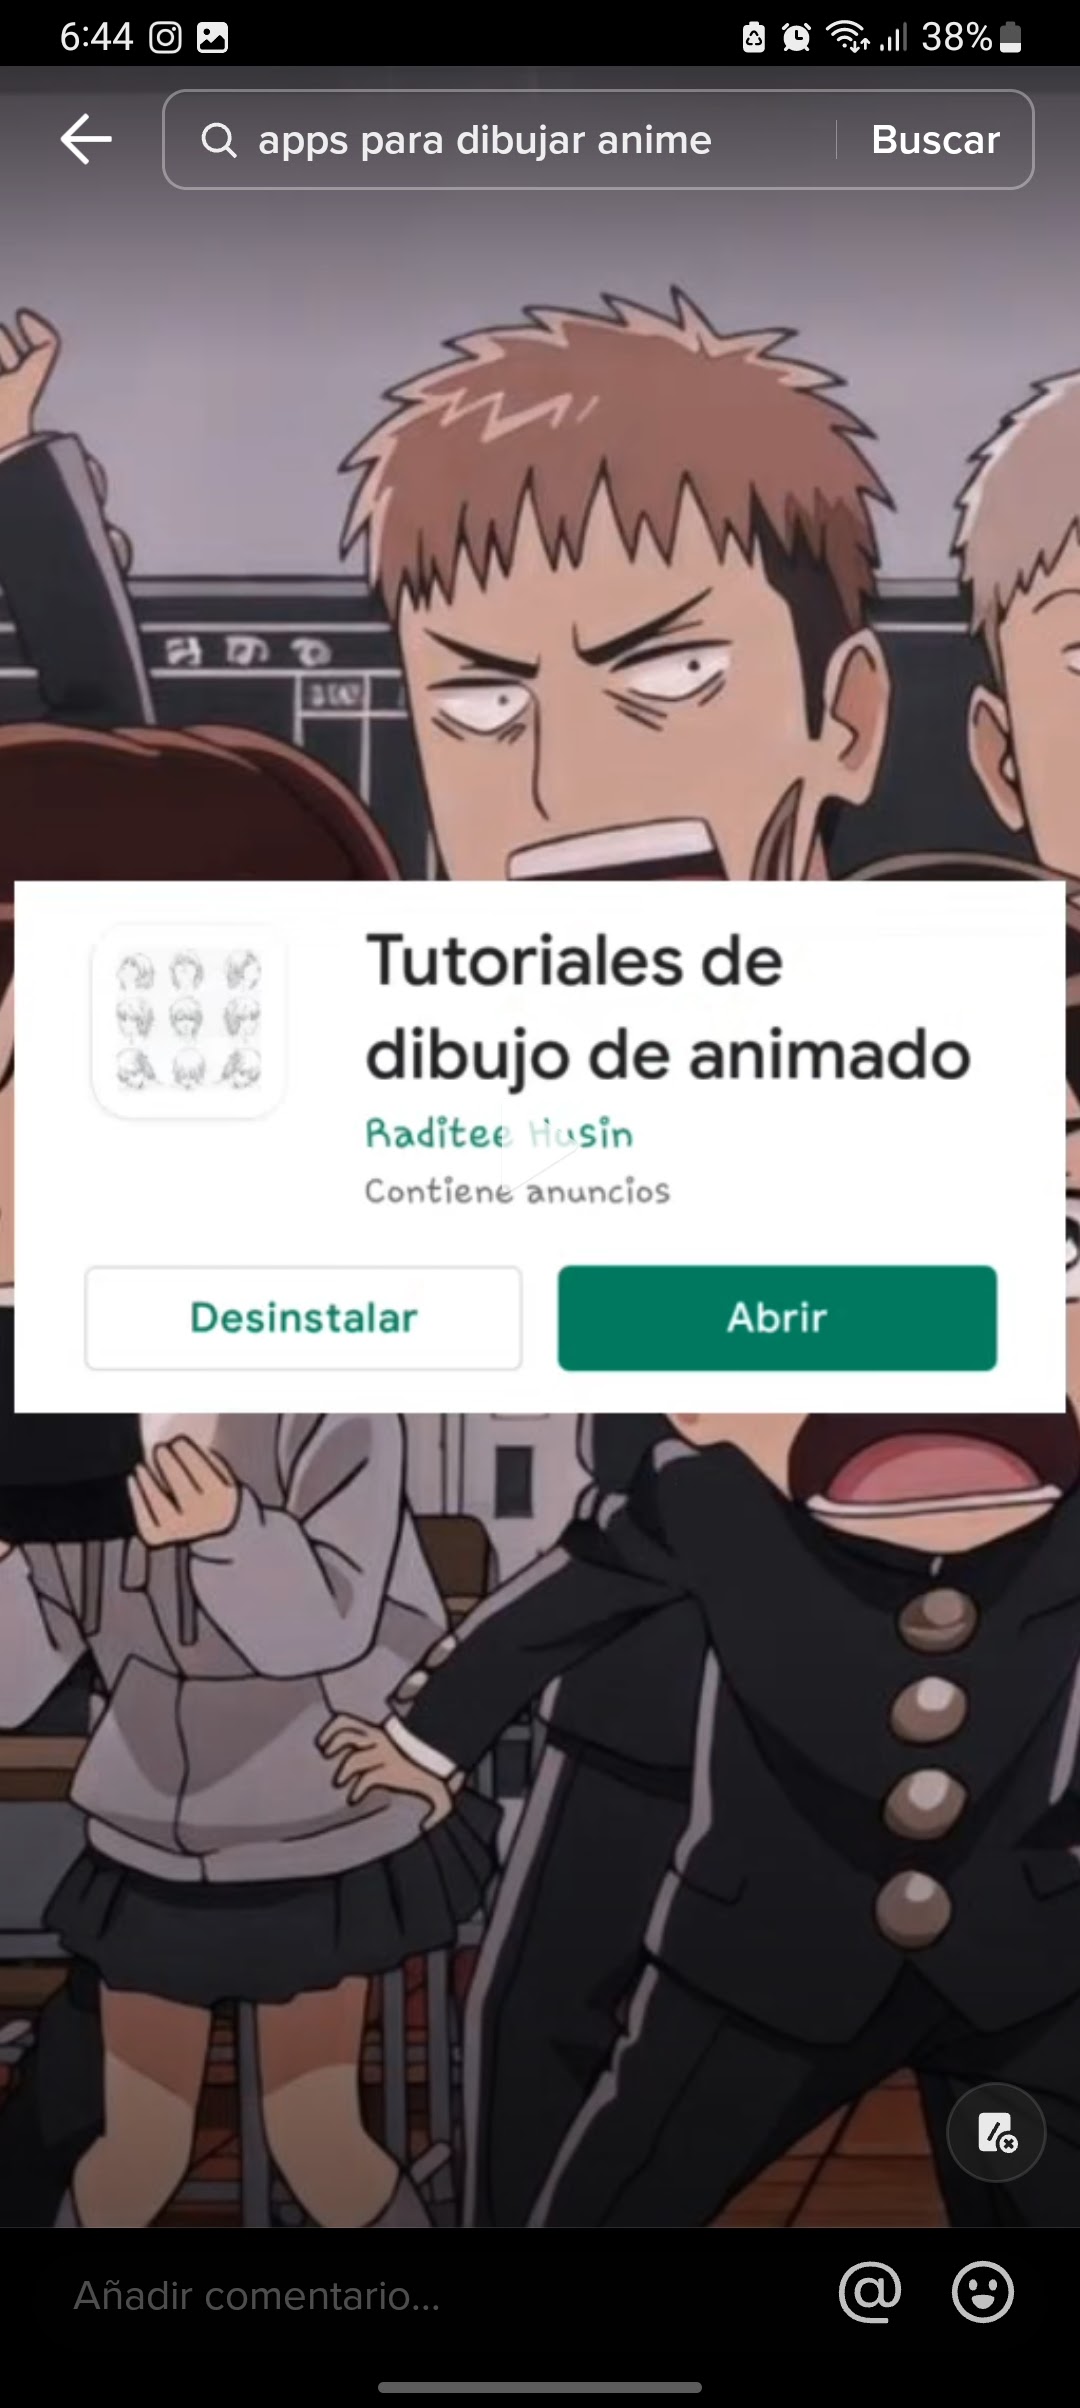 Que paso con la app de tutoriales para dibujar anime? - Comunidad de Google  Play